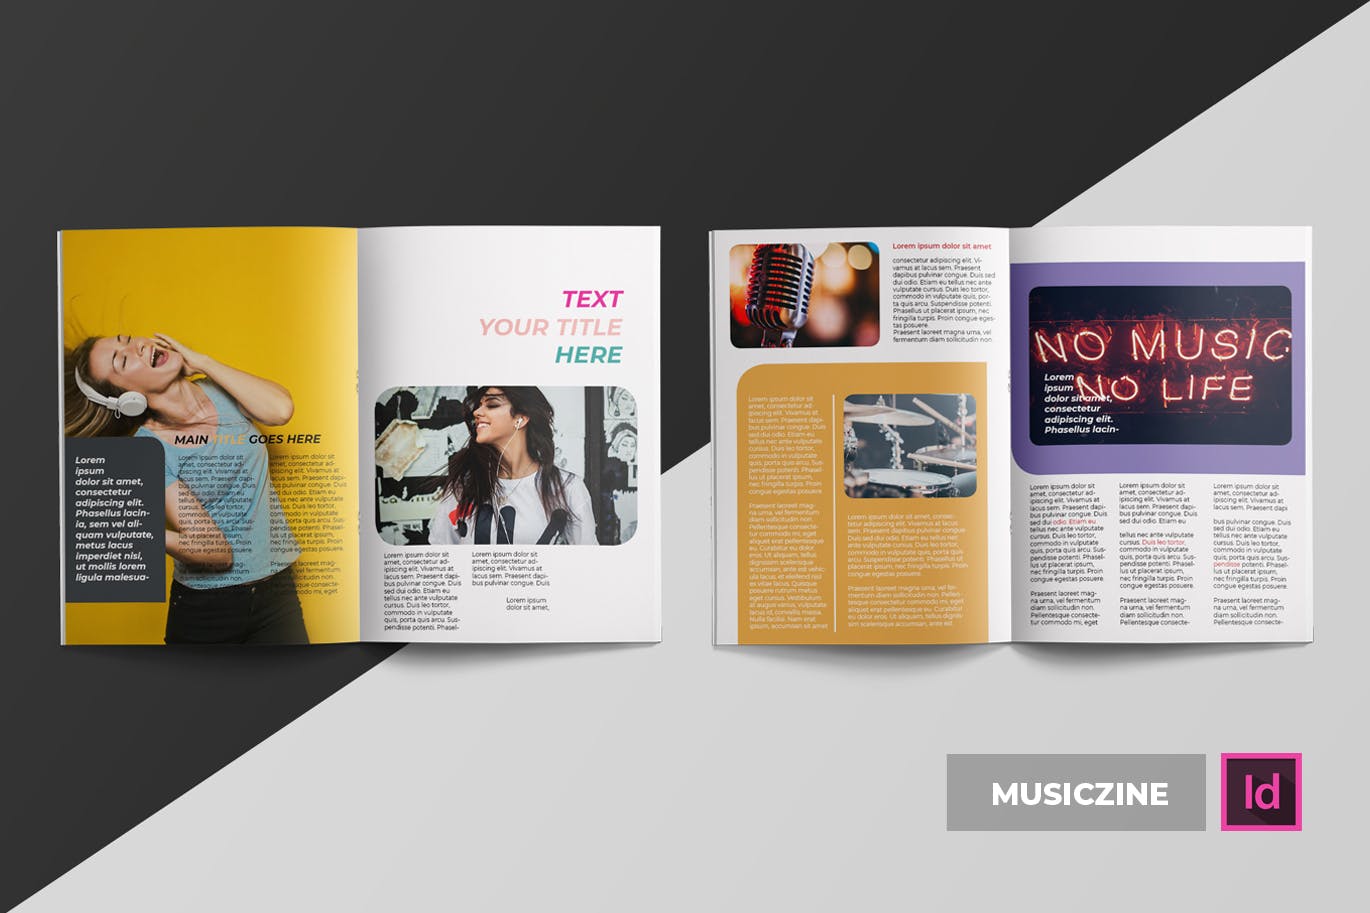 音乐主题专业素材库精选杂志排版设计INDD模板 Musiczine | Magazine Template插图(1)